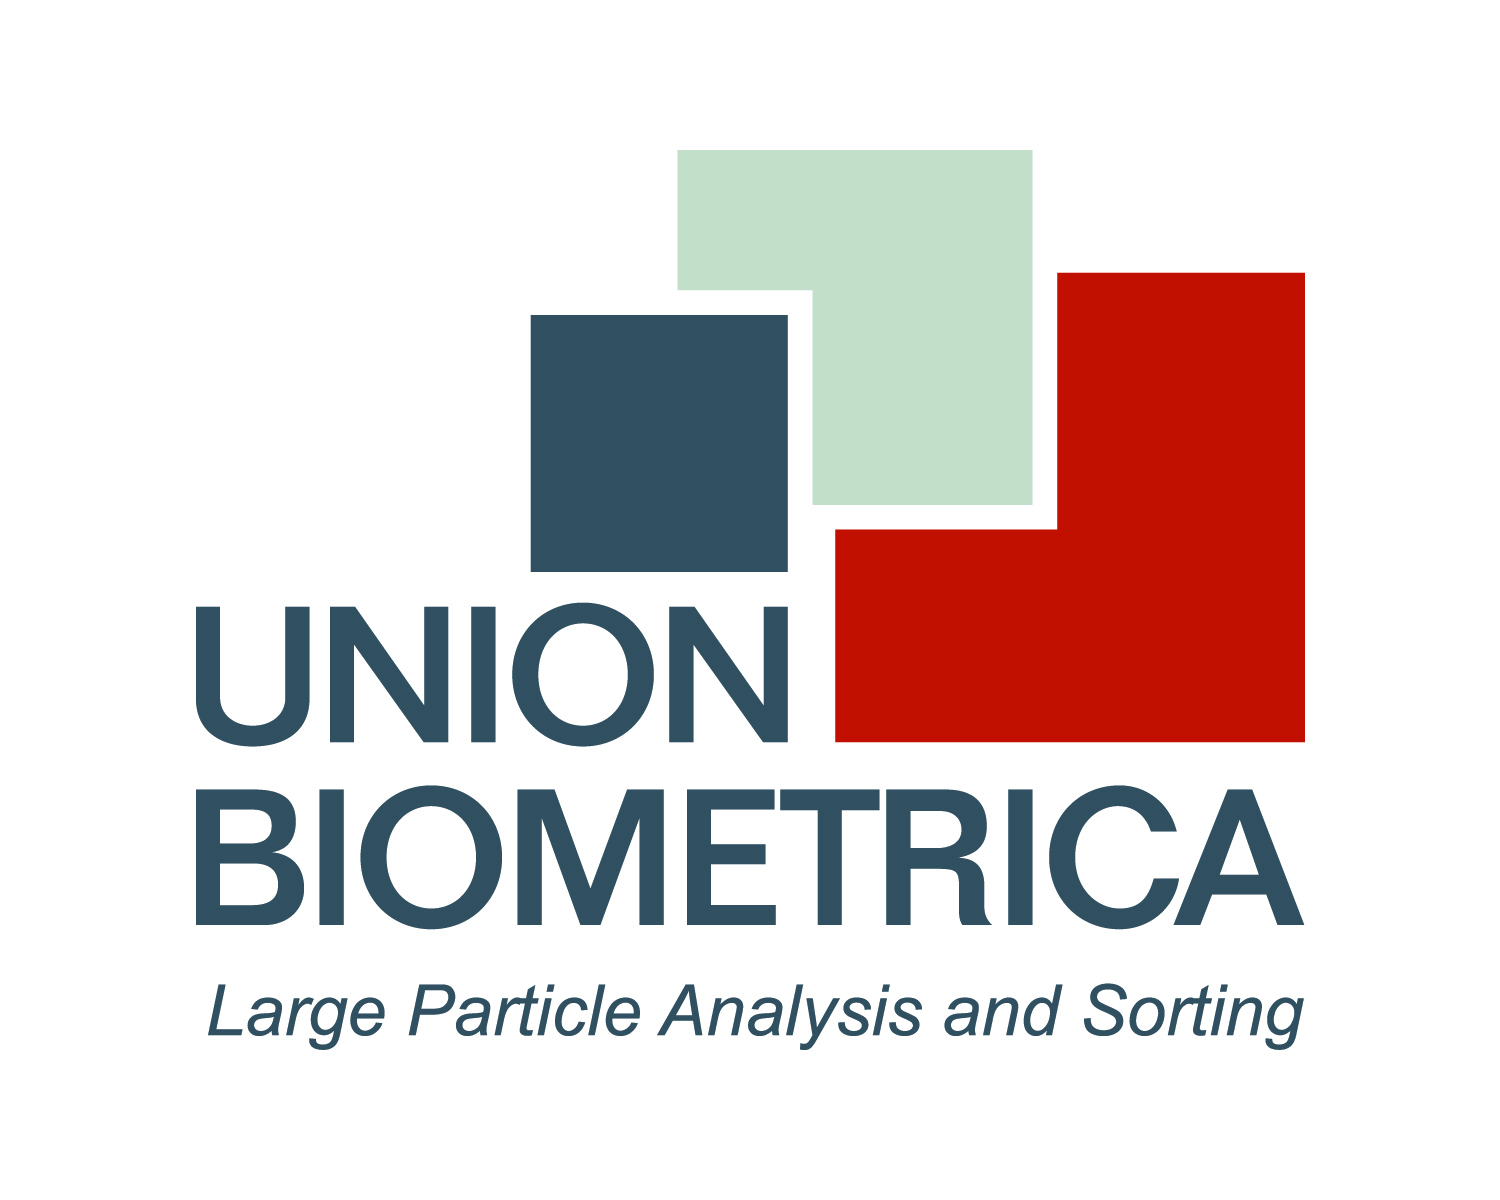 Union Bio_Analysis and Sorting 300dpi.jpg